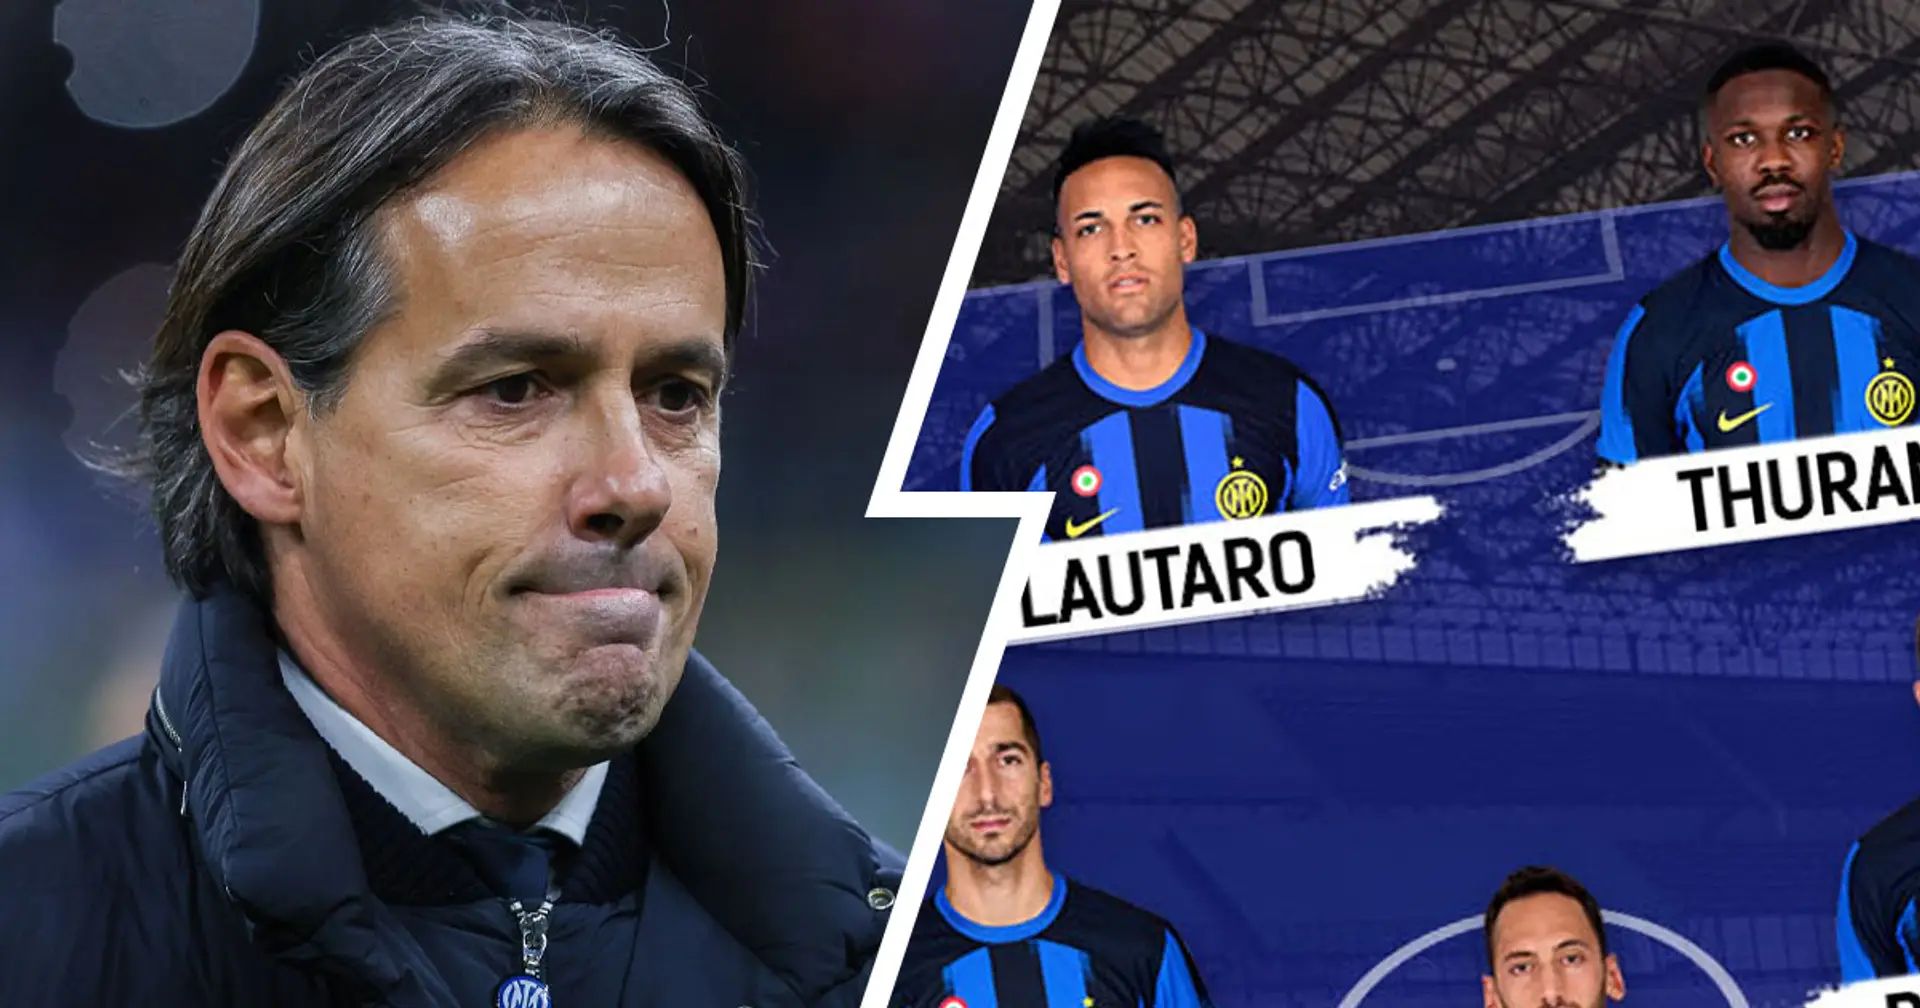 Tornano Lautaro e Pavard, formazione quasi fatta: Inzaghi ha un solo dubbio in vista di Milan-Inter